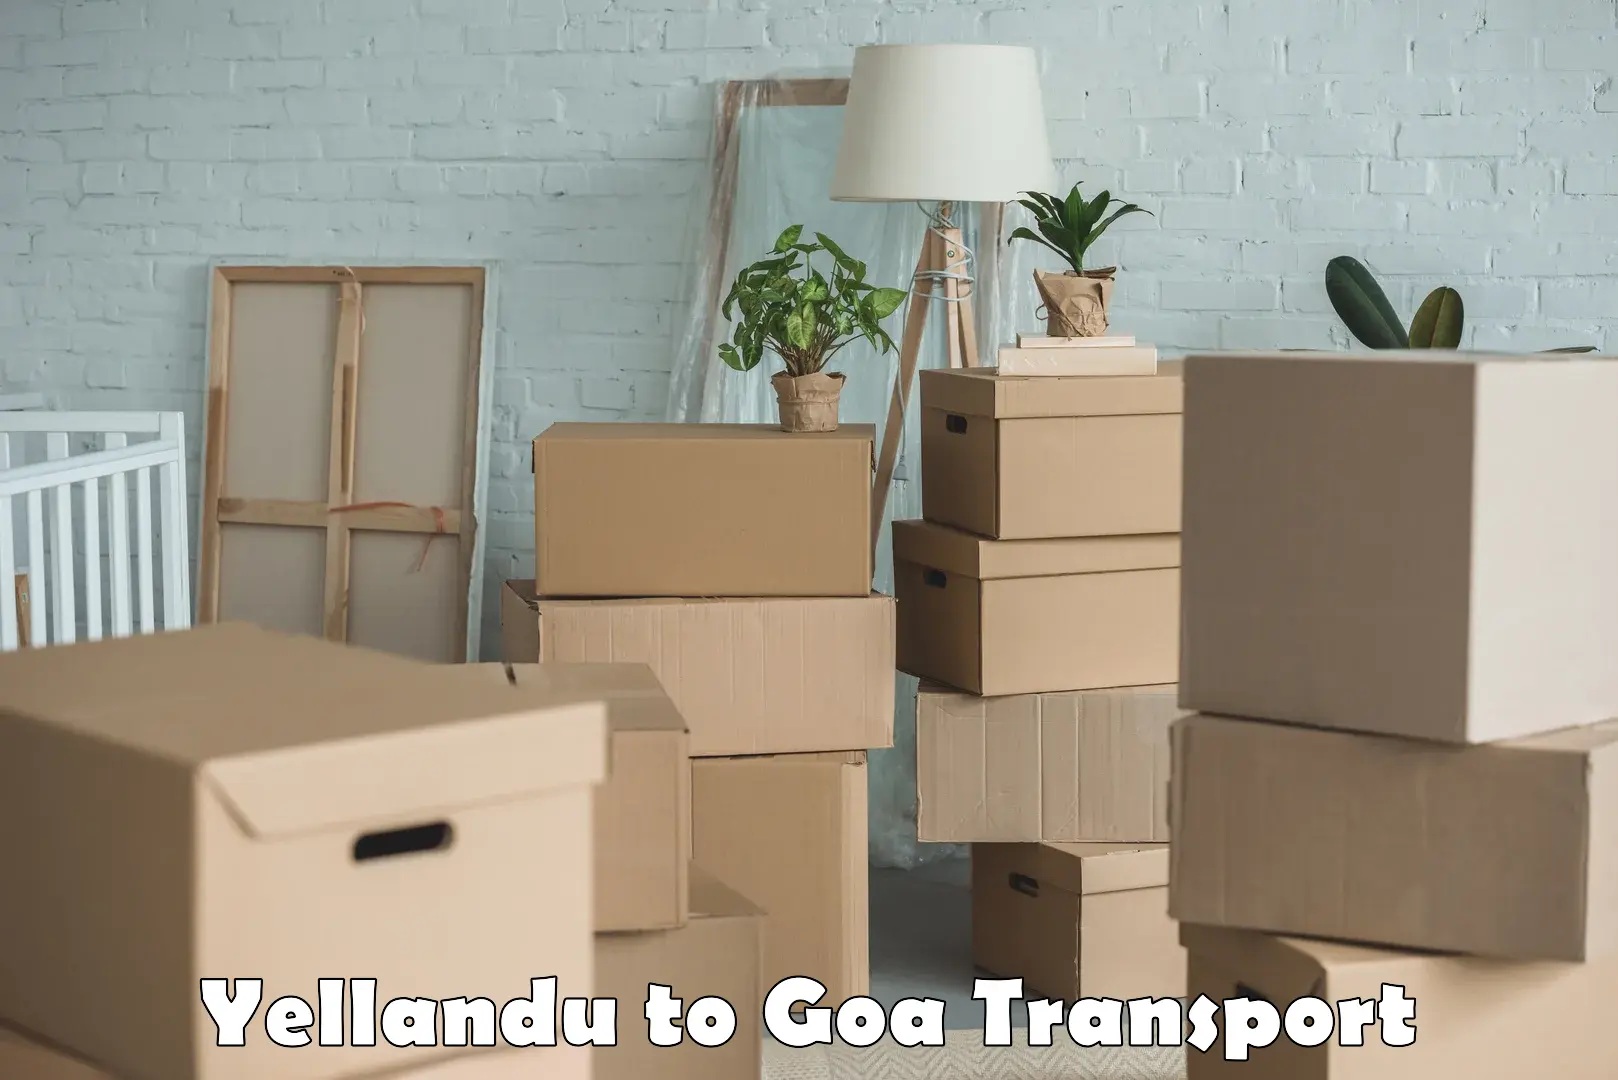 Lorry transport service Yellandu to Goa University